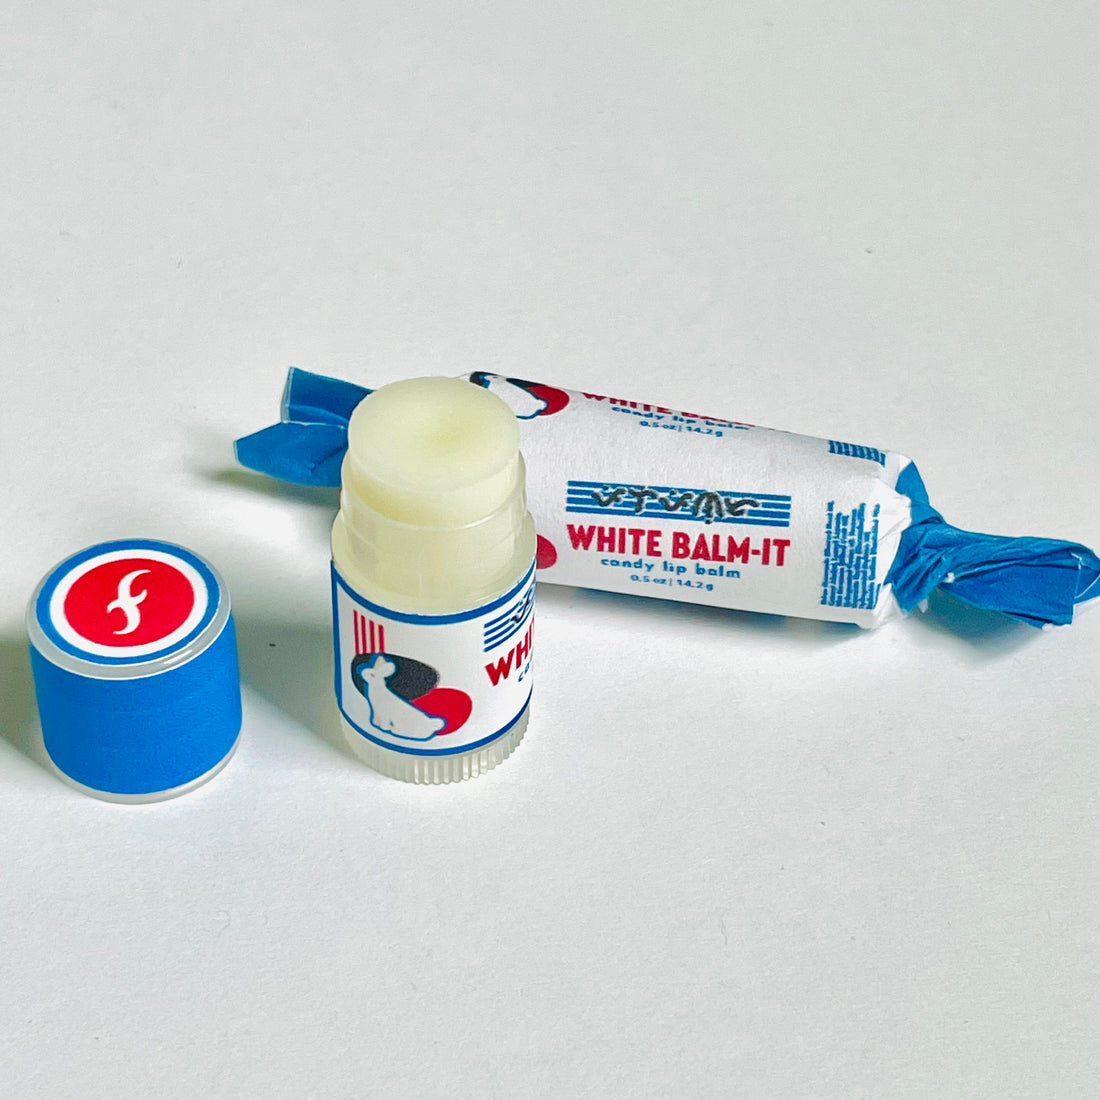 White Balm-it Lip Balm